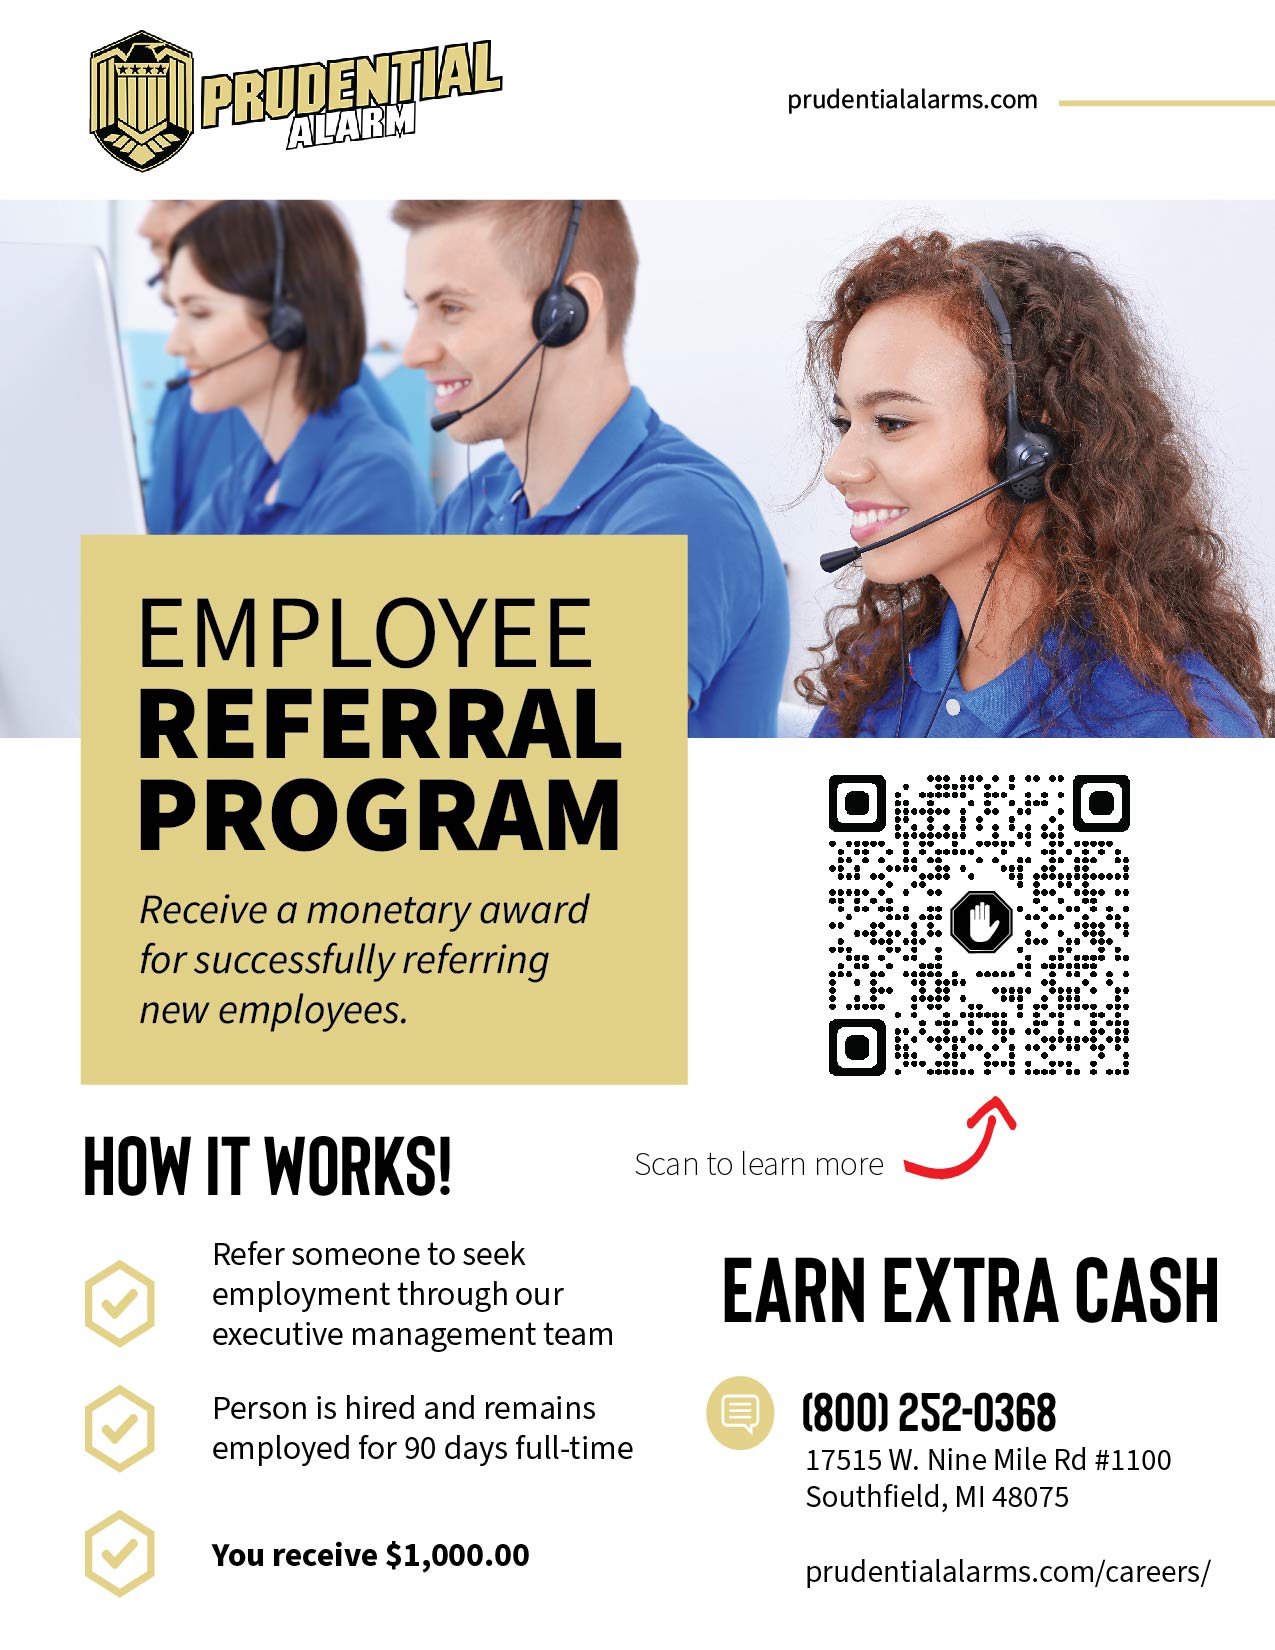 Employee referral program flier